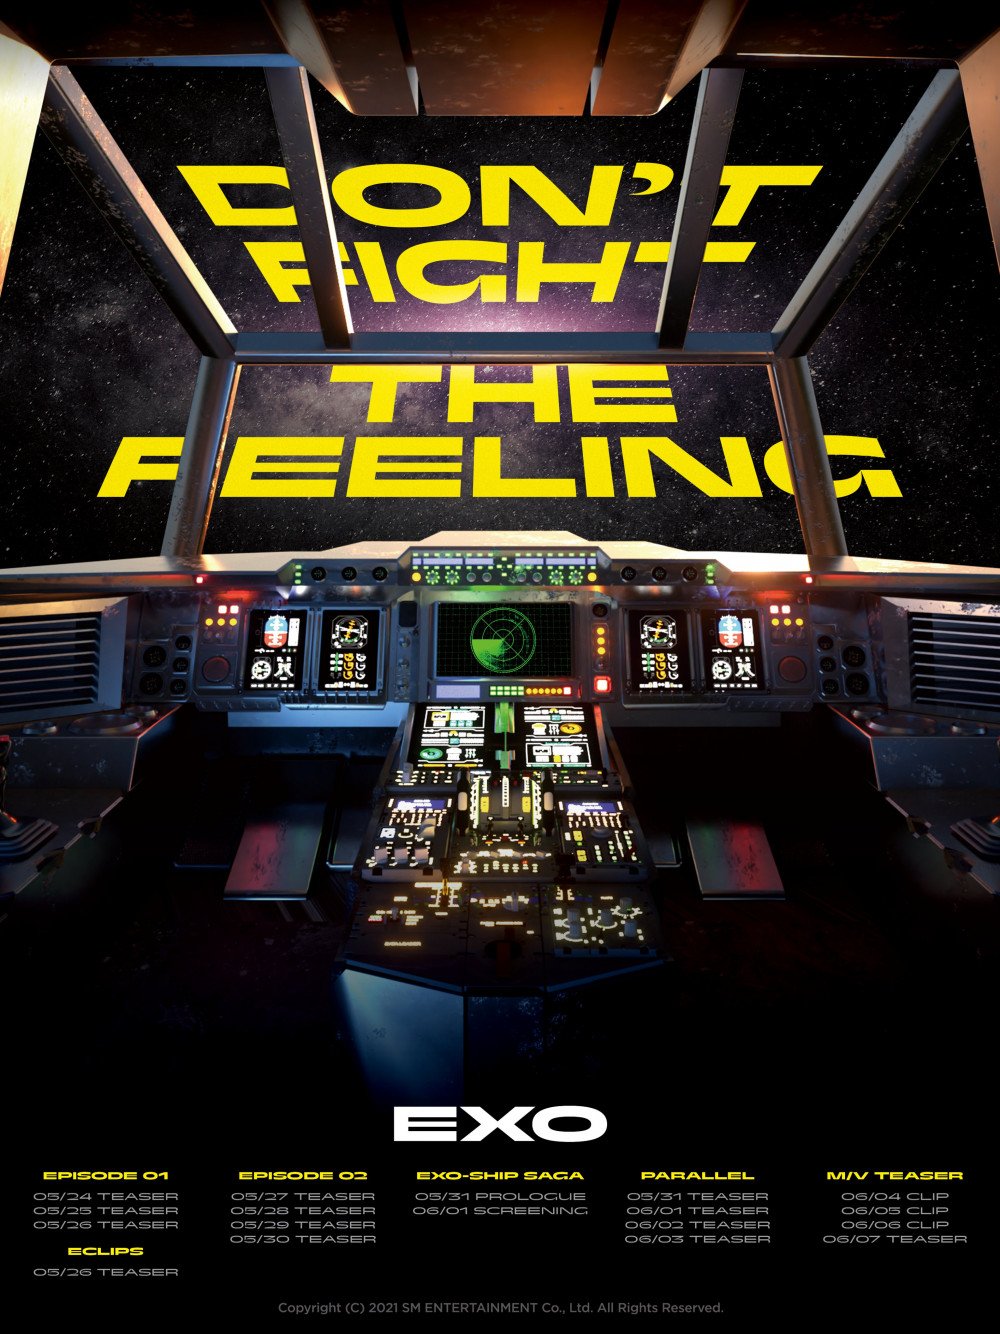 [Камбэк] EXO альбом "Don't Fight the Feeling": музыкальный клип "Don't Fight the Feeling"